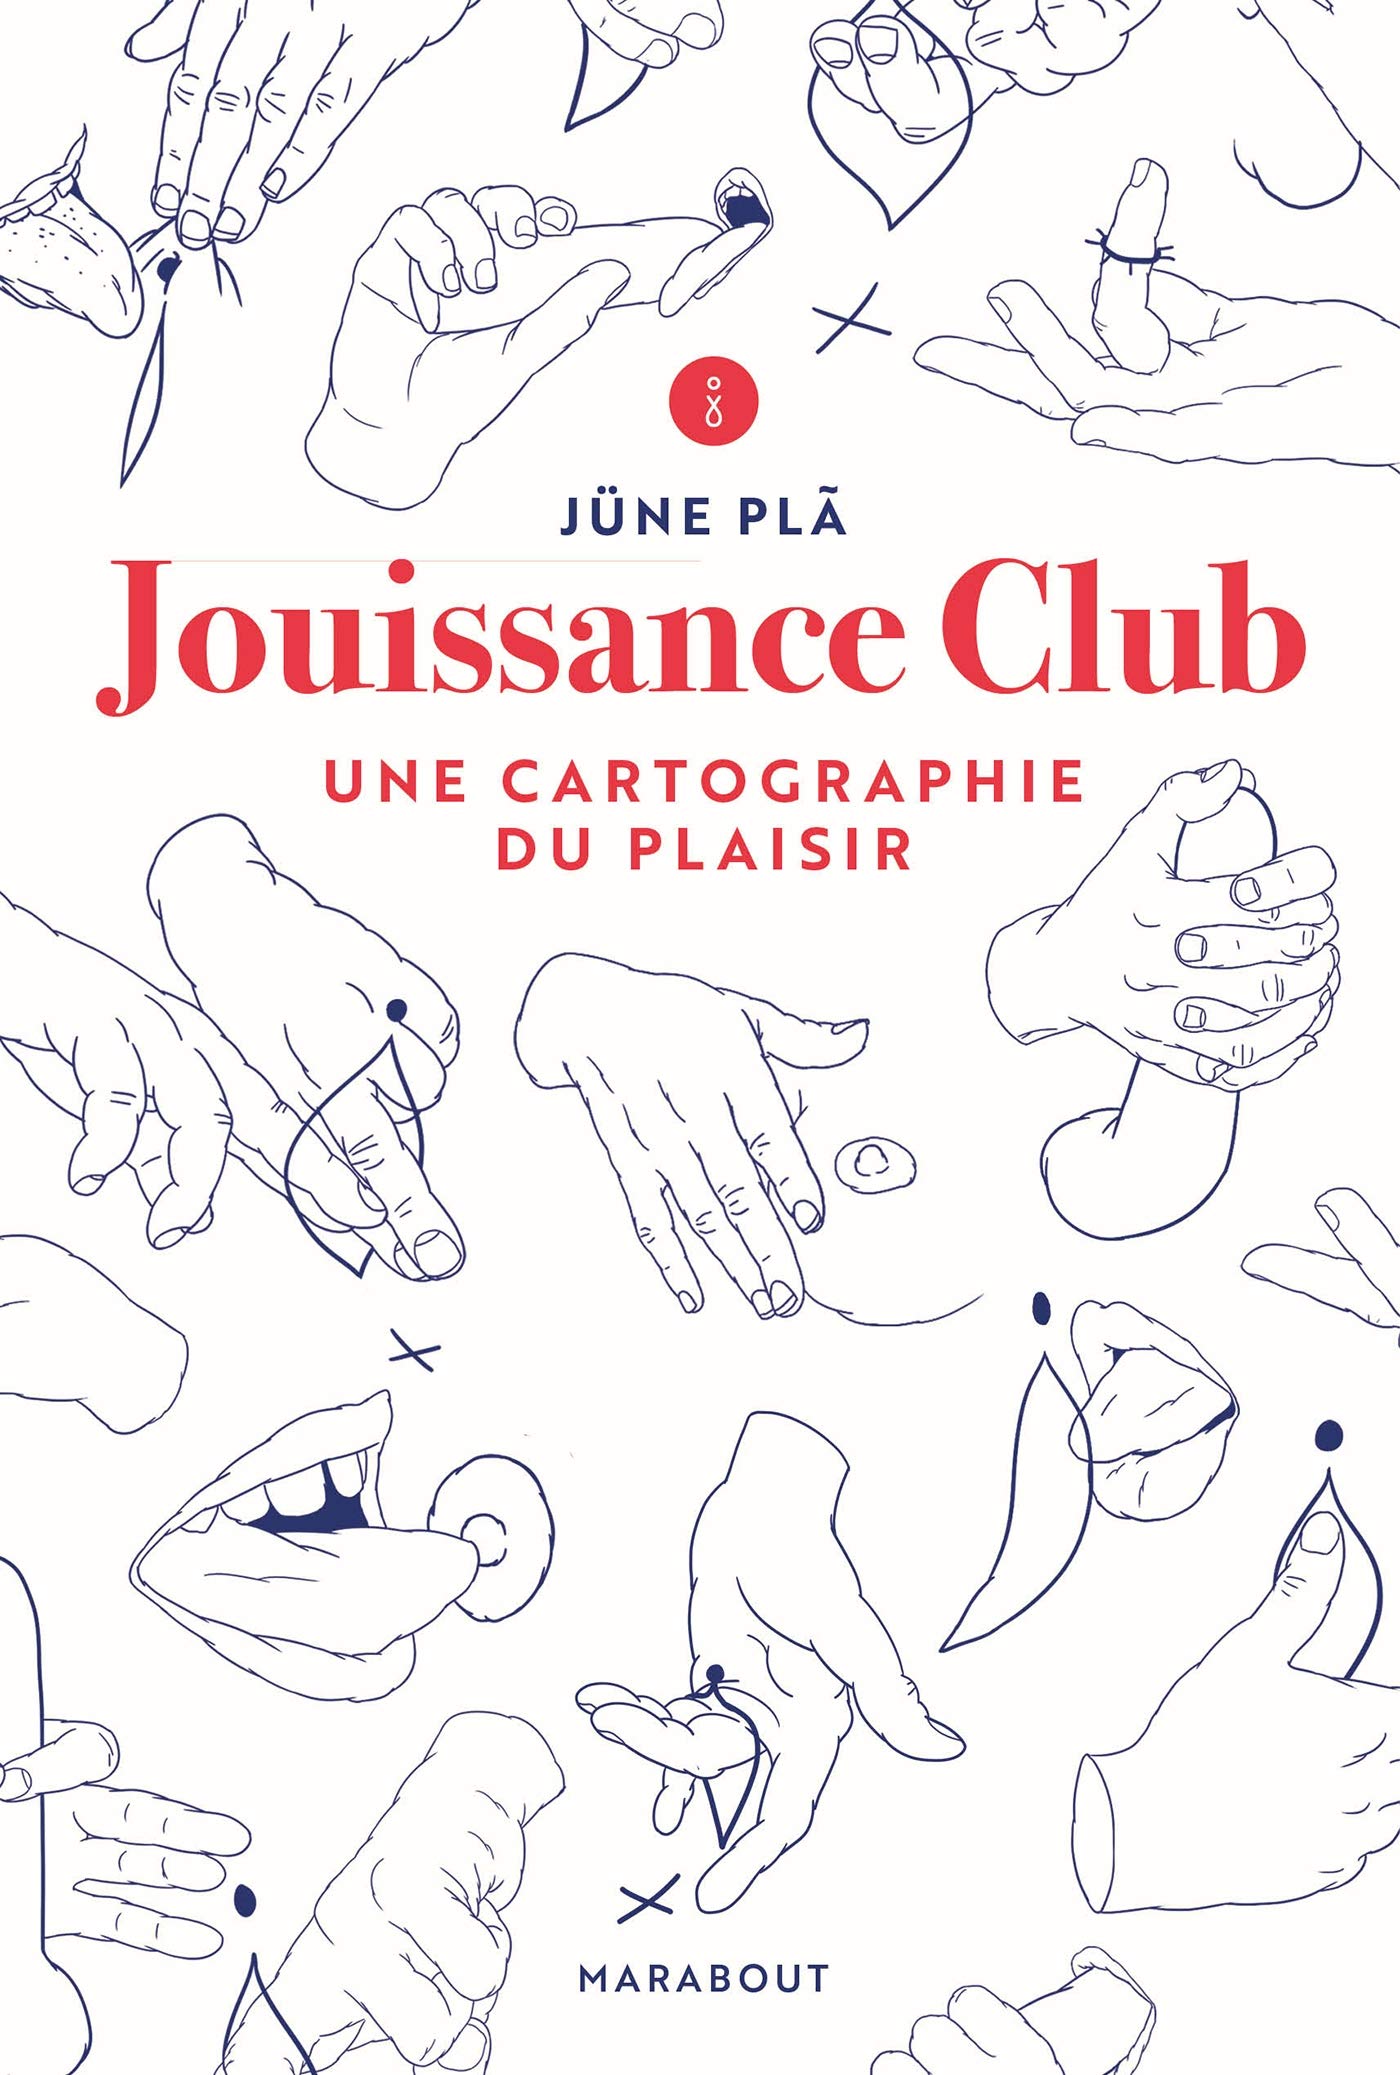 Jouissance Club | June Pla